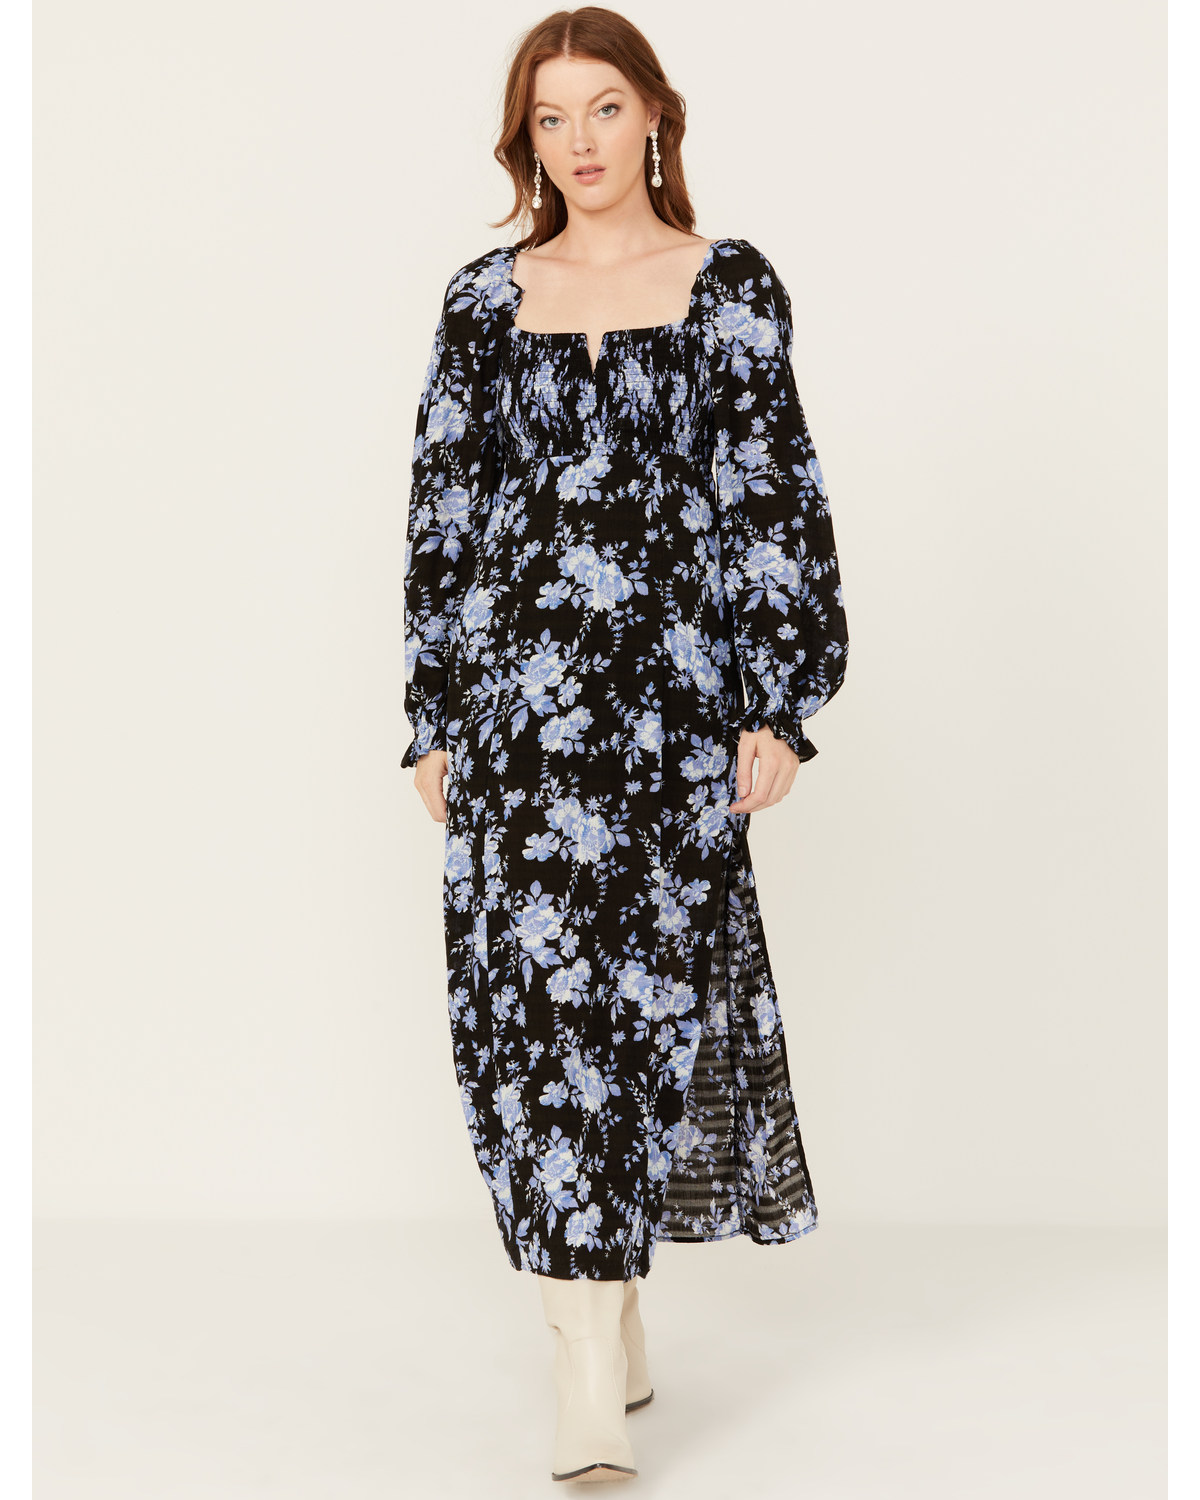 Free People Women's Jaymes Floral Print Midi Long Sleeve Dress